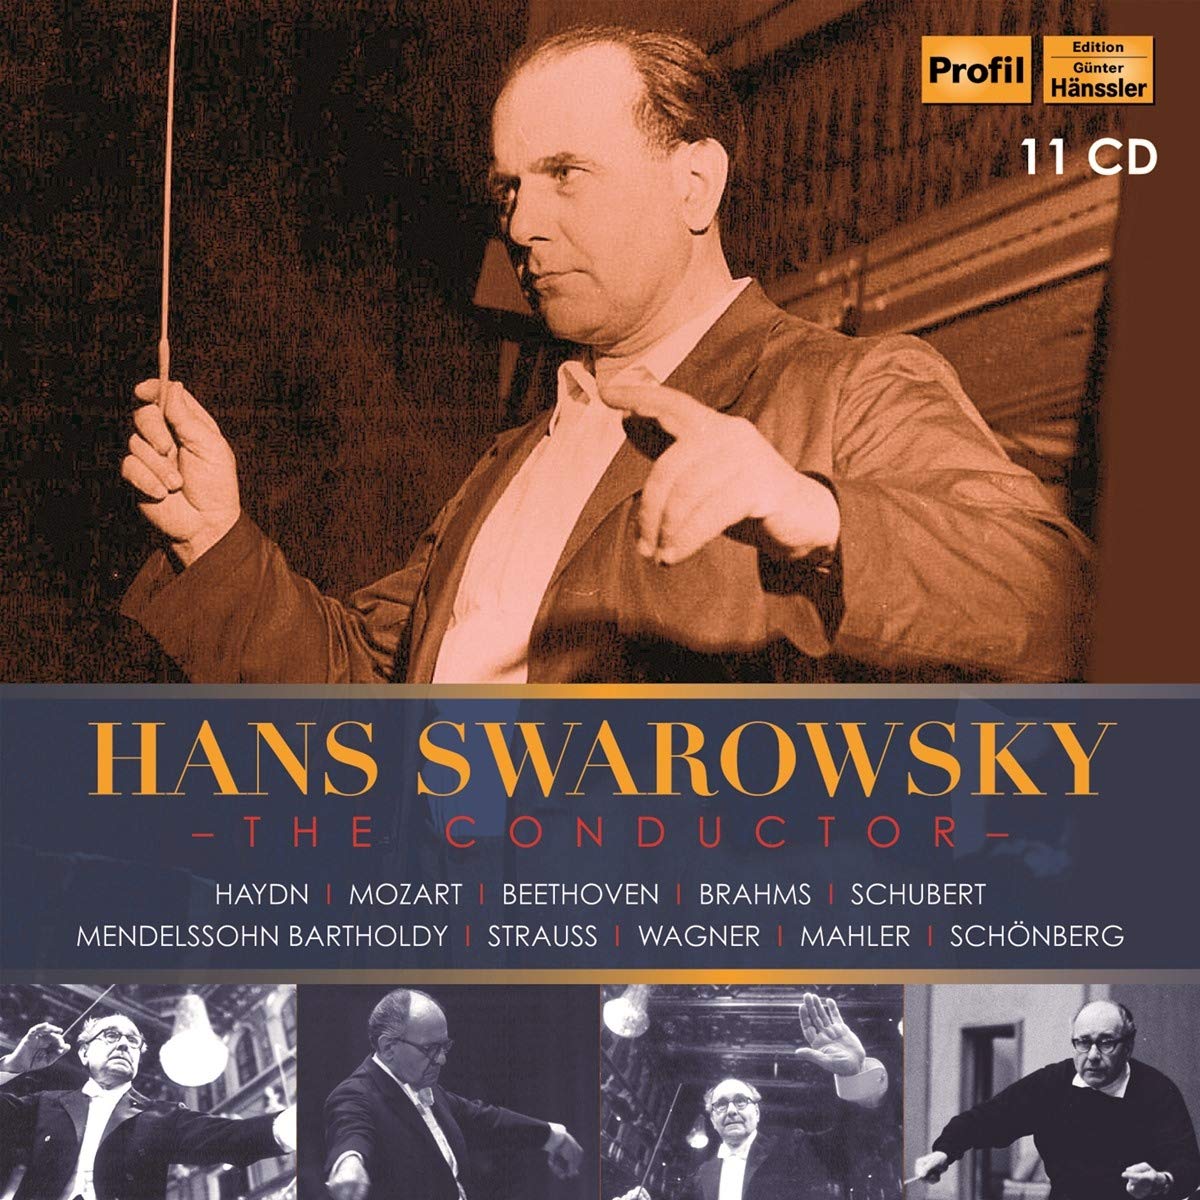 Audio Cd Hans Swarowsky: The Conductor (11 Cd) NUOVO SIGILLATO, EDIZIONE DEL 01/11/2019 SUBITO DISPONIBILE